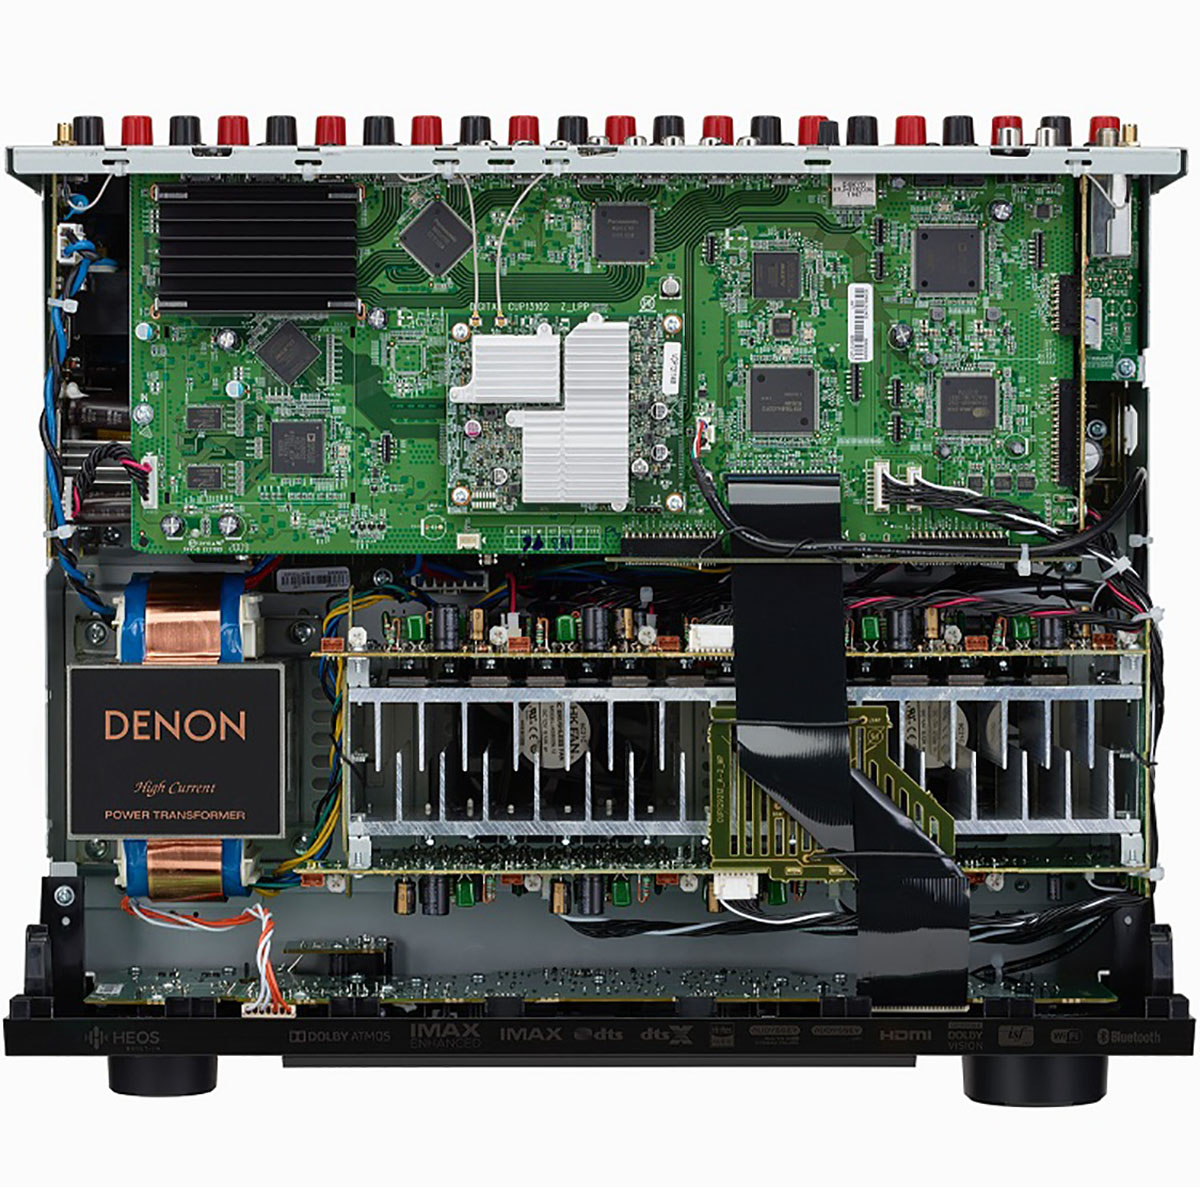 Denon AVR-X3700H 9.2 channel 8K AV receiver Inside